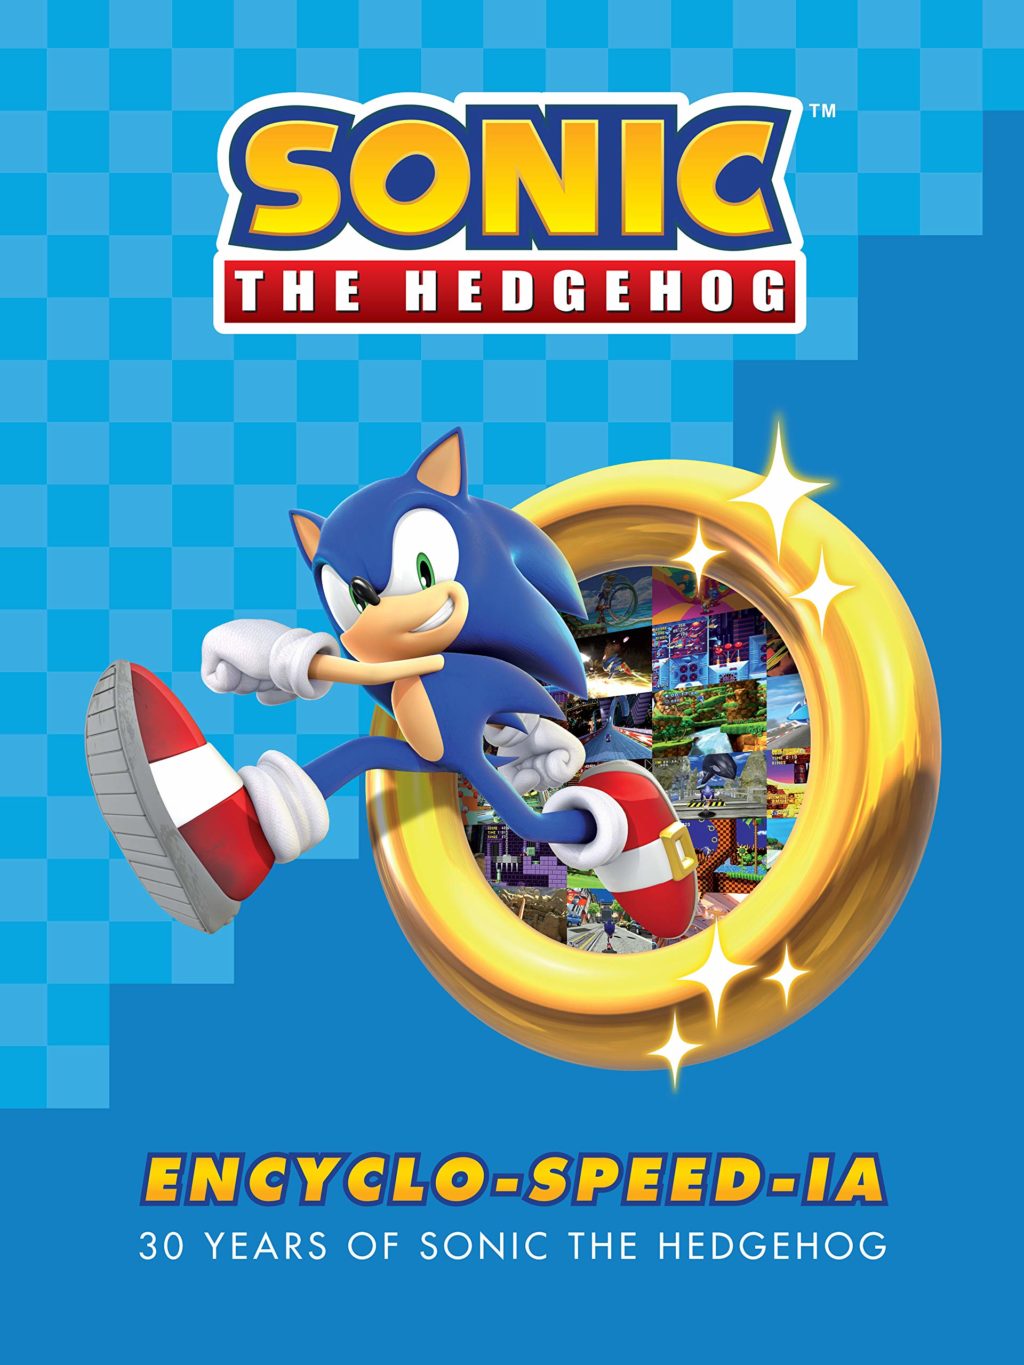 Enciclopédia sobre Sonic será lançada em 2021